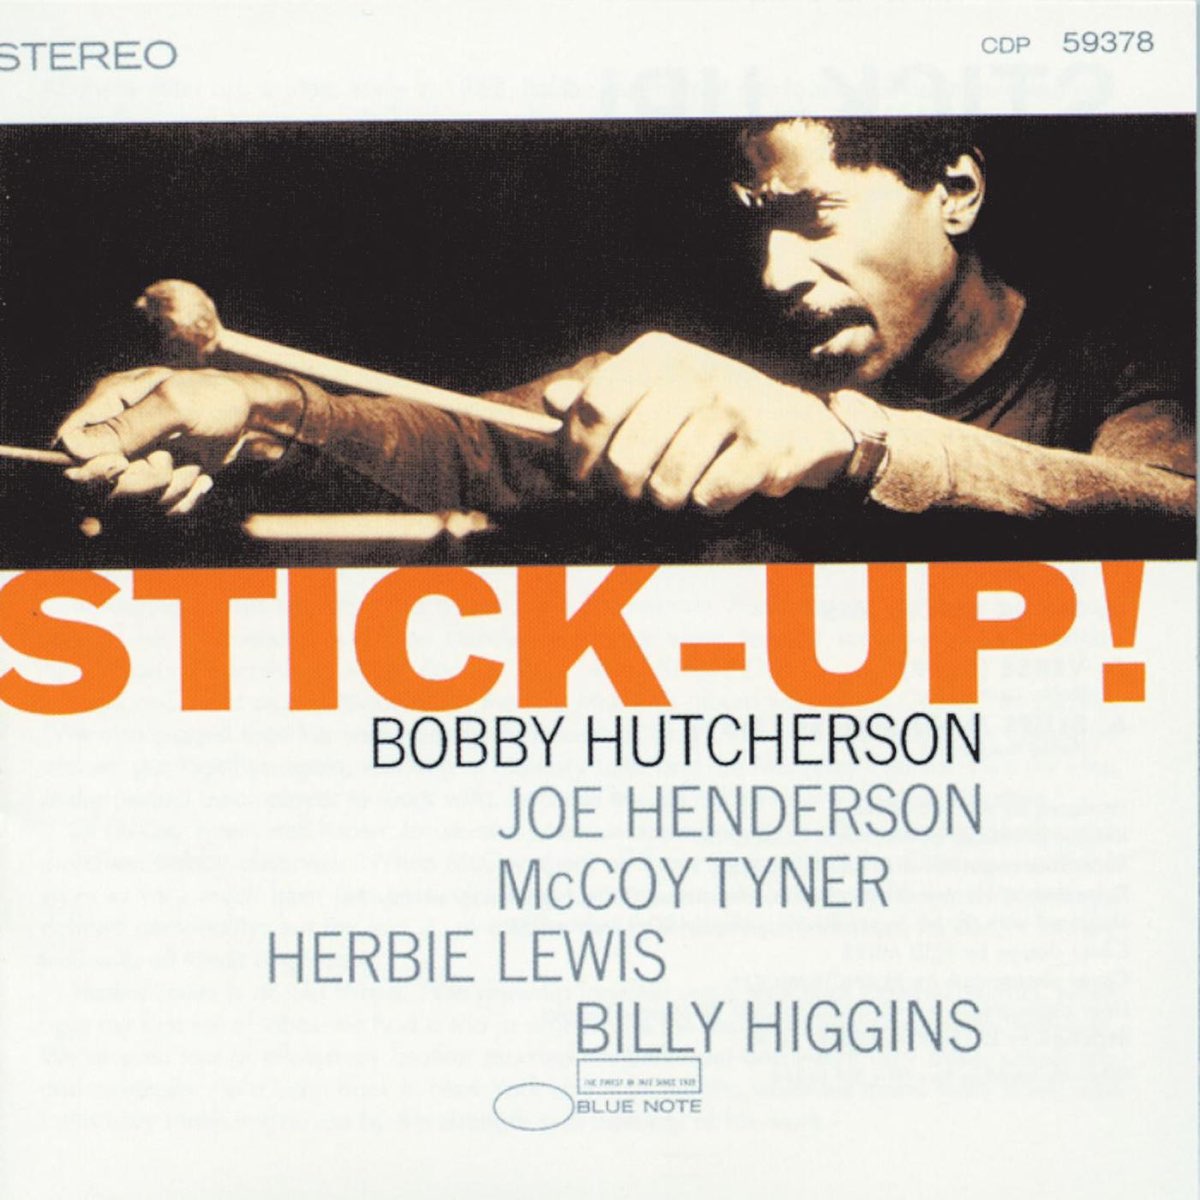 ボビー・ハッチャーソンの「Stick-Up!」をApple Musicで